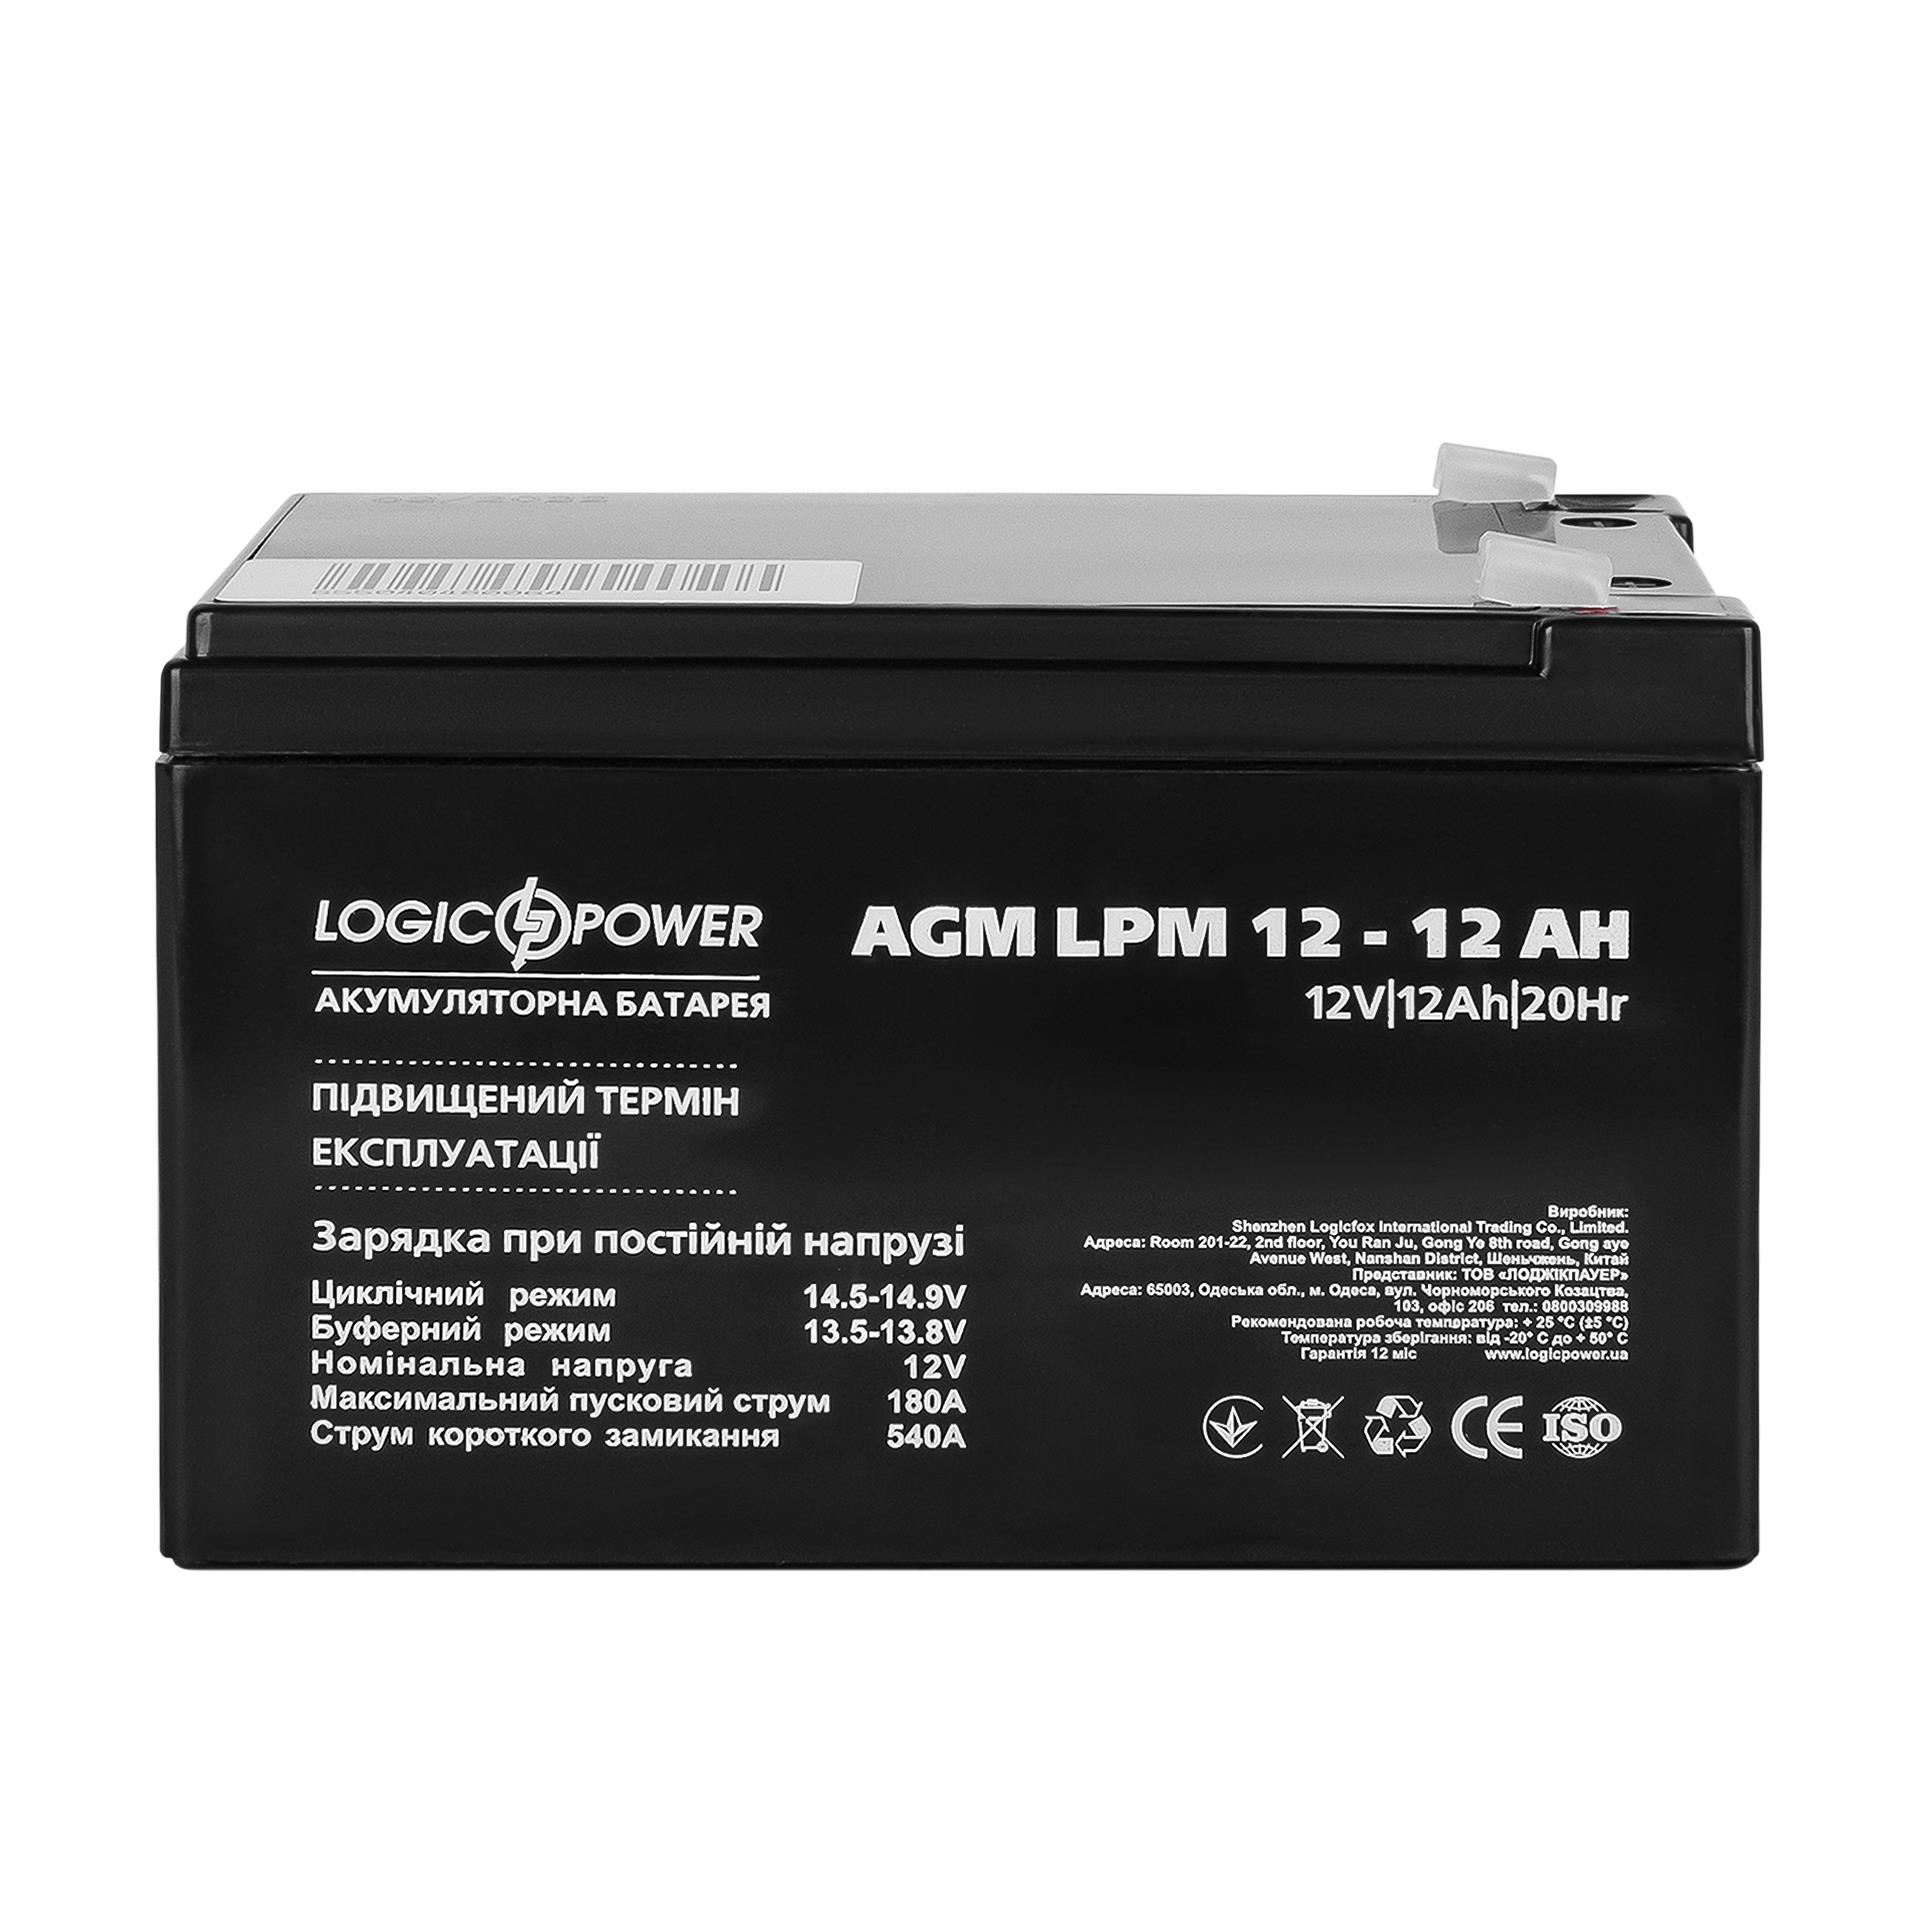 Акумулятор свинцево-кислотний LogicPower AGM LPM 12V - 12 Ah (6550)